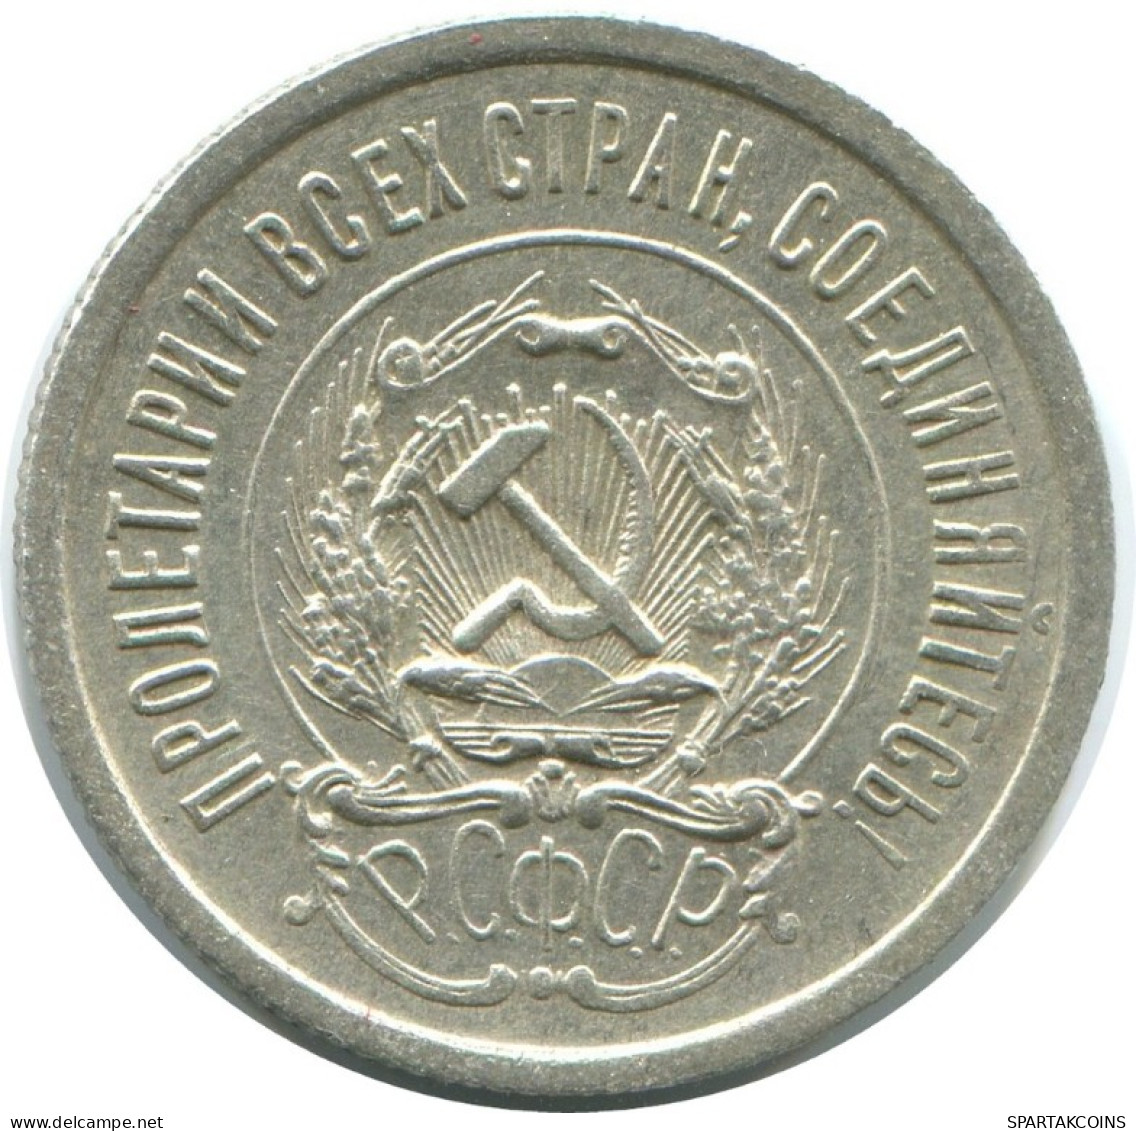 20 KOPEKS 1923 RUSSIA RSFSR SILVER Coin HIGH GRADE #AF631.U.A - Russland